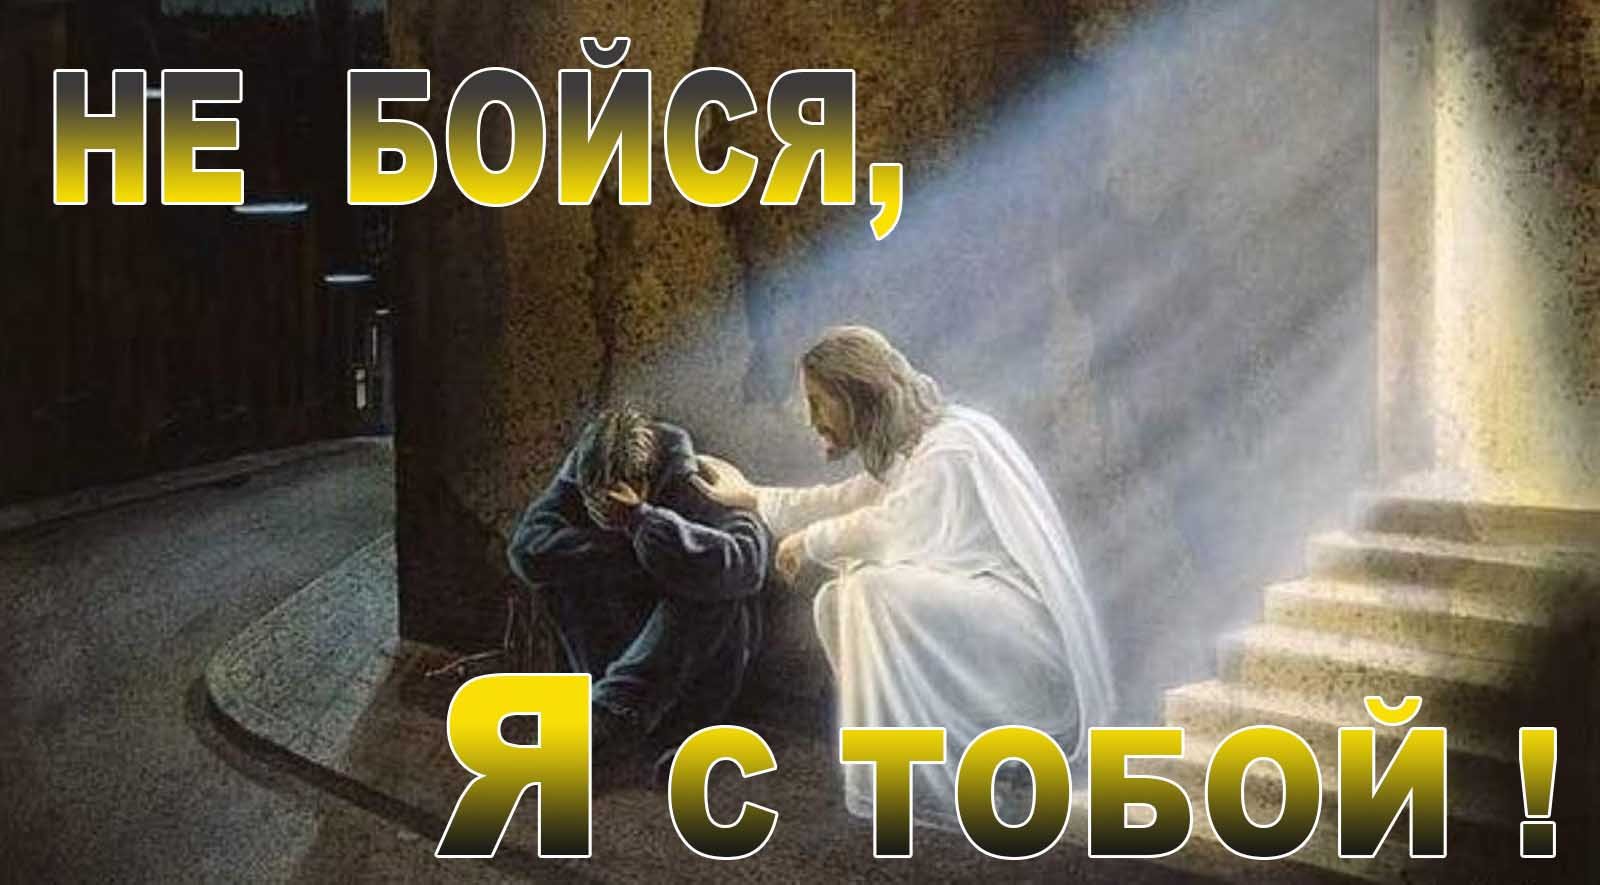 14. "Не бойся, Я с тобой!". Елифанкин С., (20.11.2022). "Церковь Божья", г. Владивосток